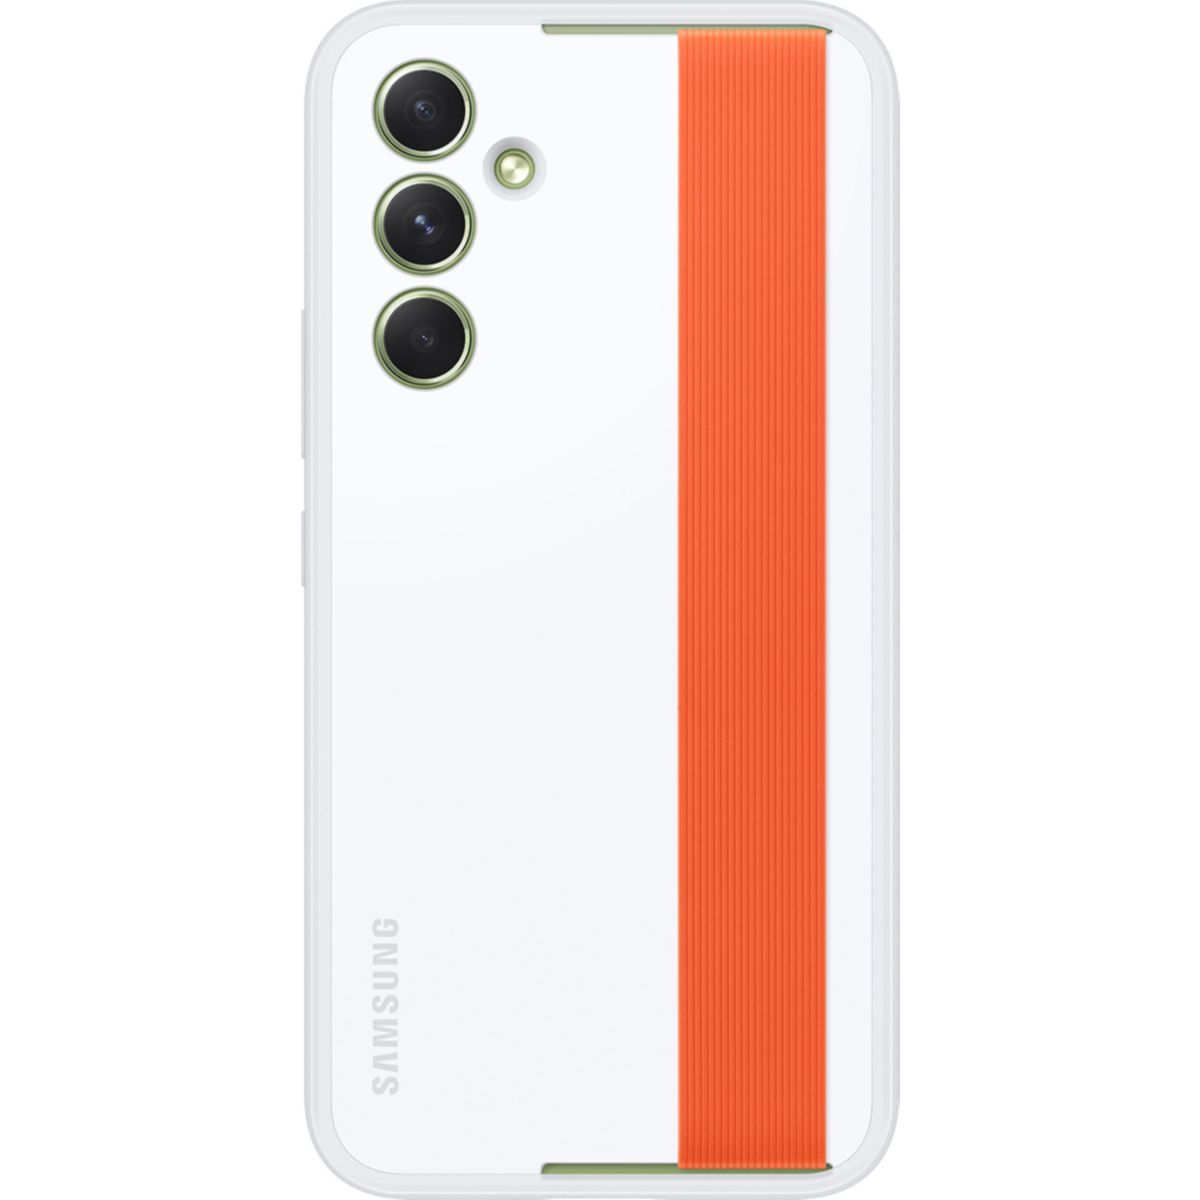 NOIR” Coque Samsung A54 Protection 360° Antichoc, Support Chargeur sans fil  –